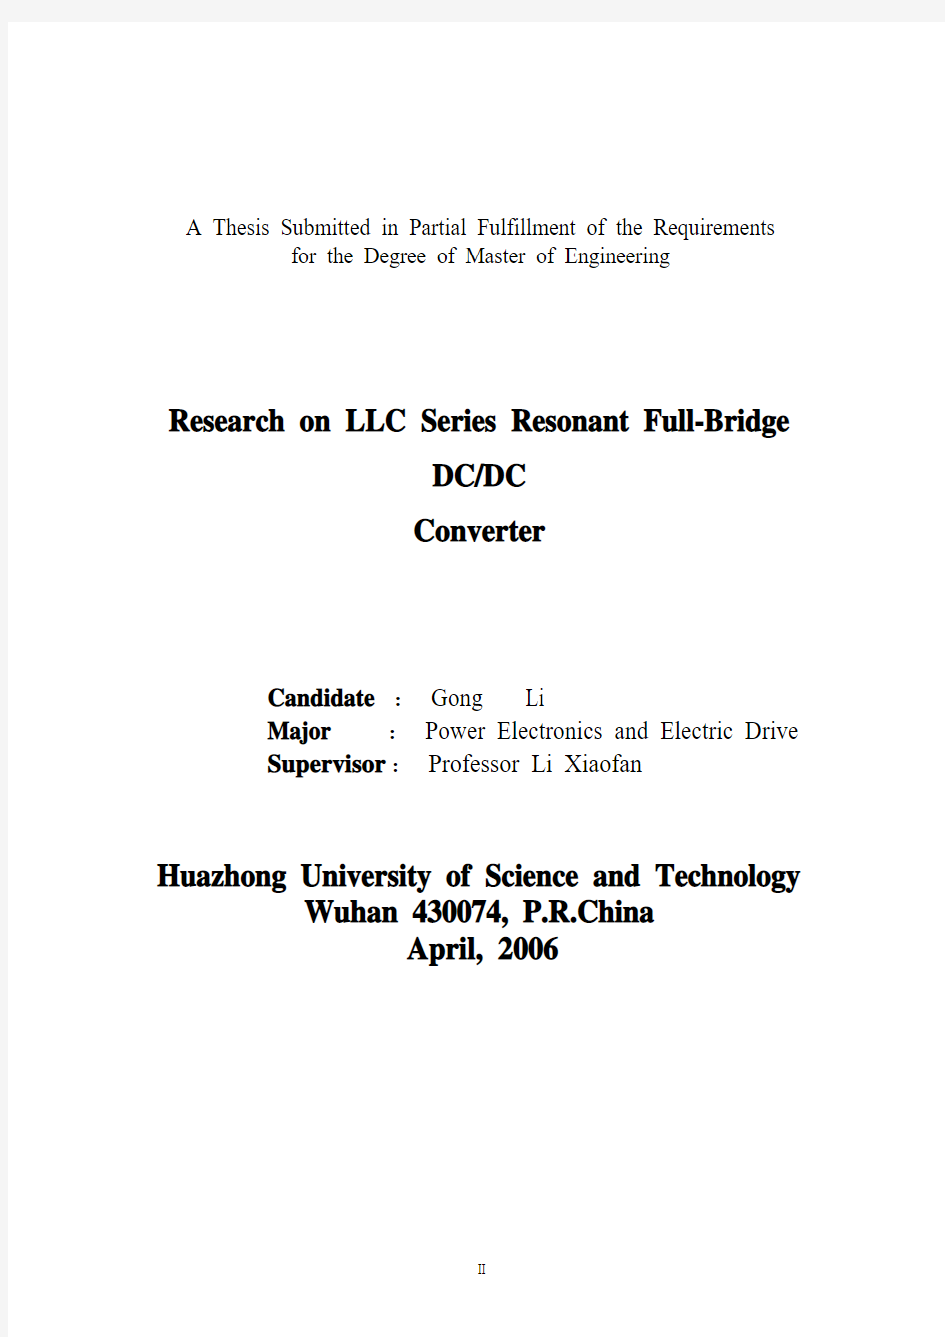 LLC串联谐振全桥DC-DC变换器的研究硕士学位毕业论文